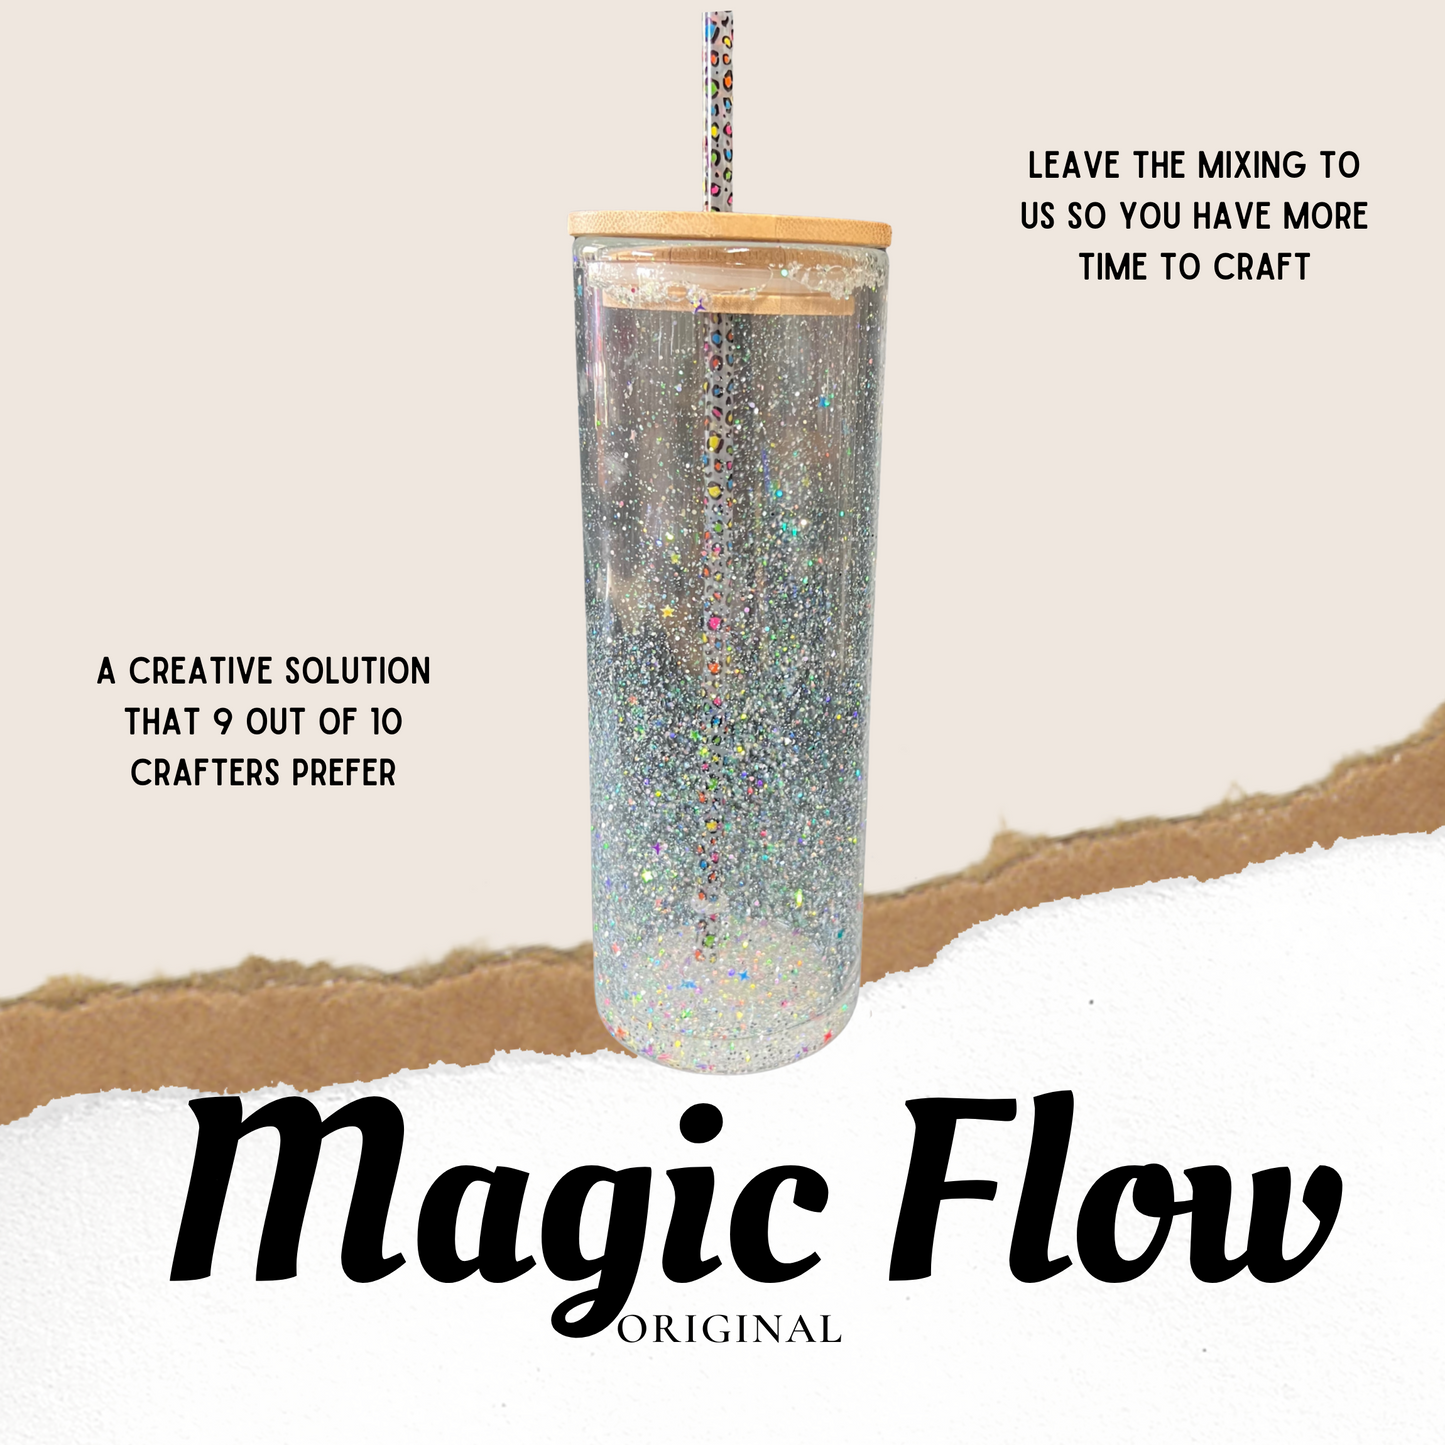 Magic Flow™ Original